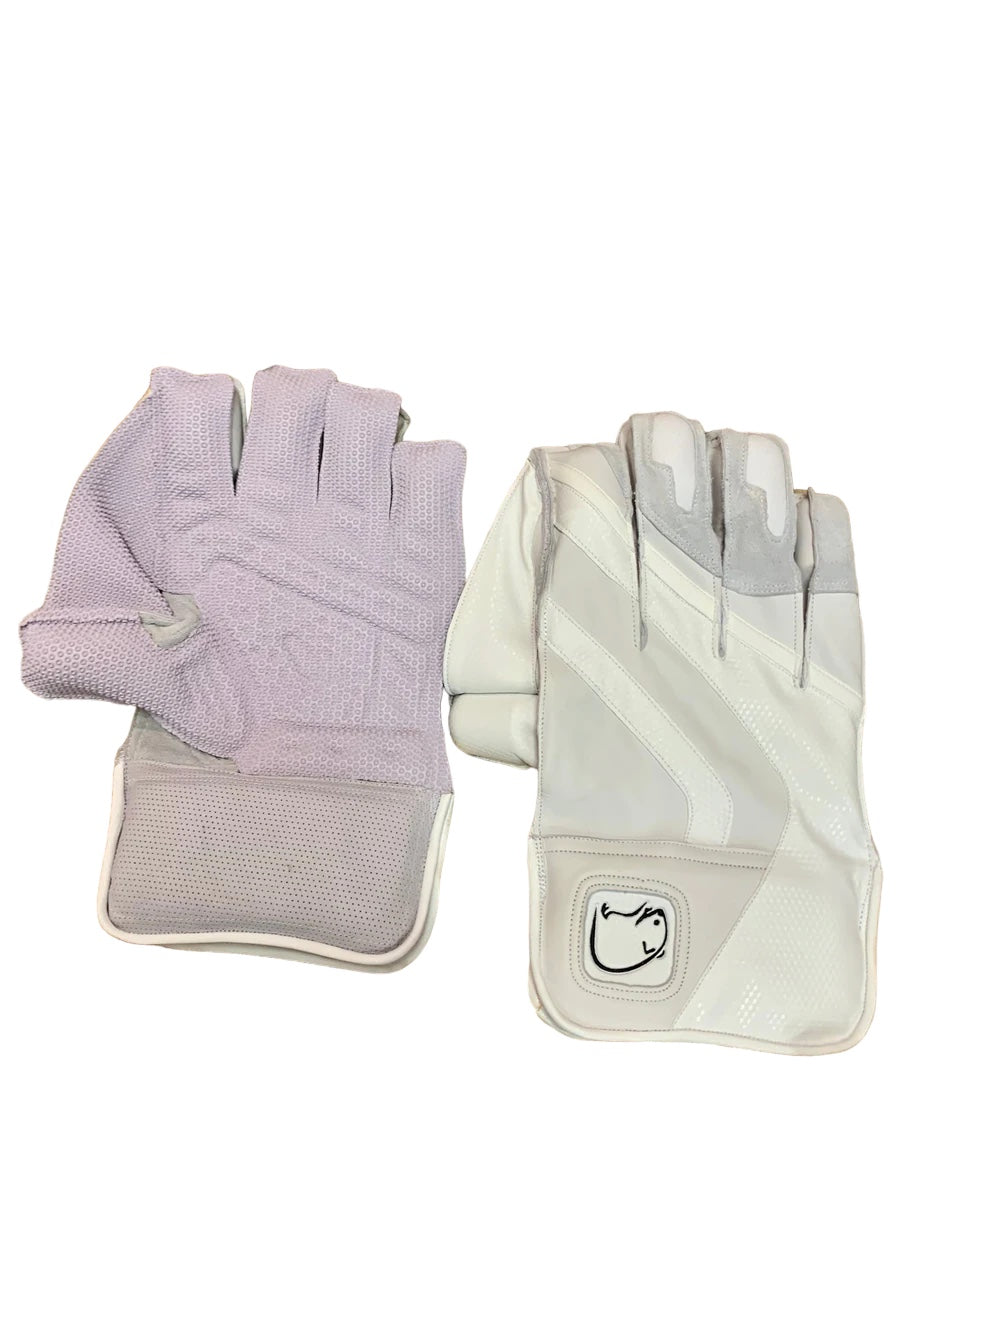 Wombat Pro Wicket Keeping Gloves MK2